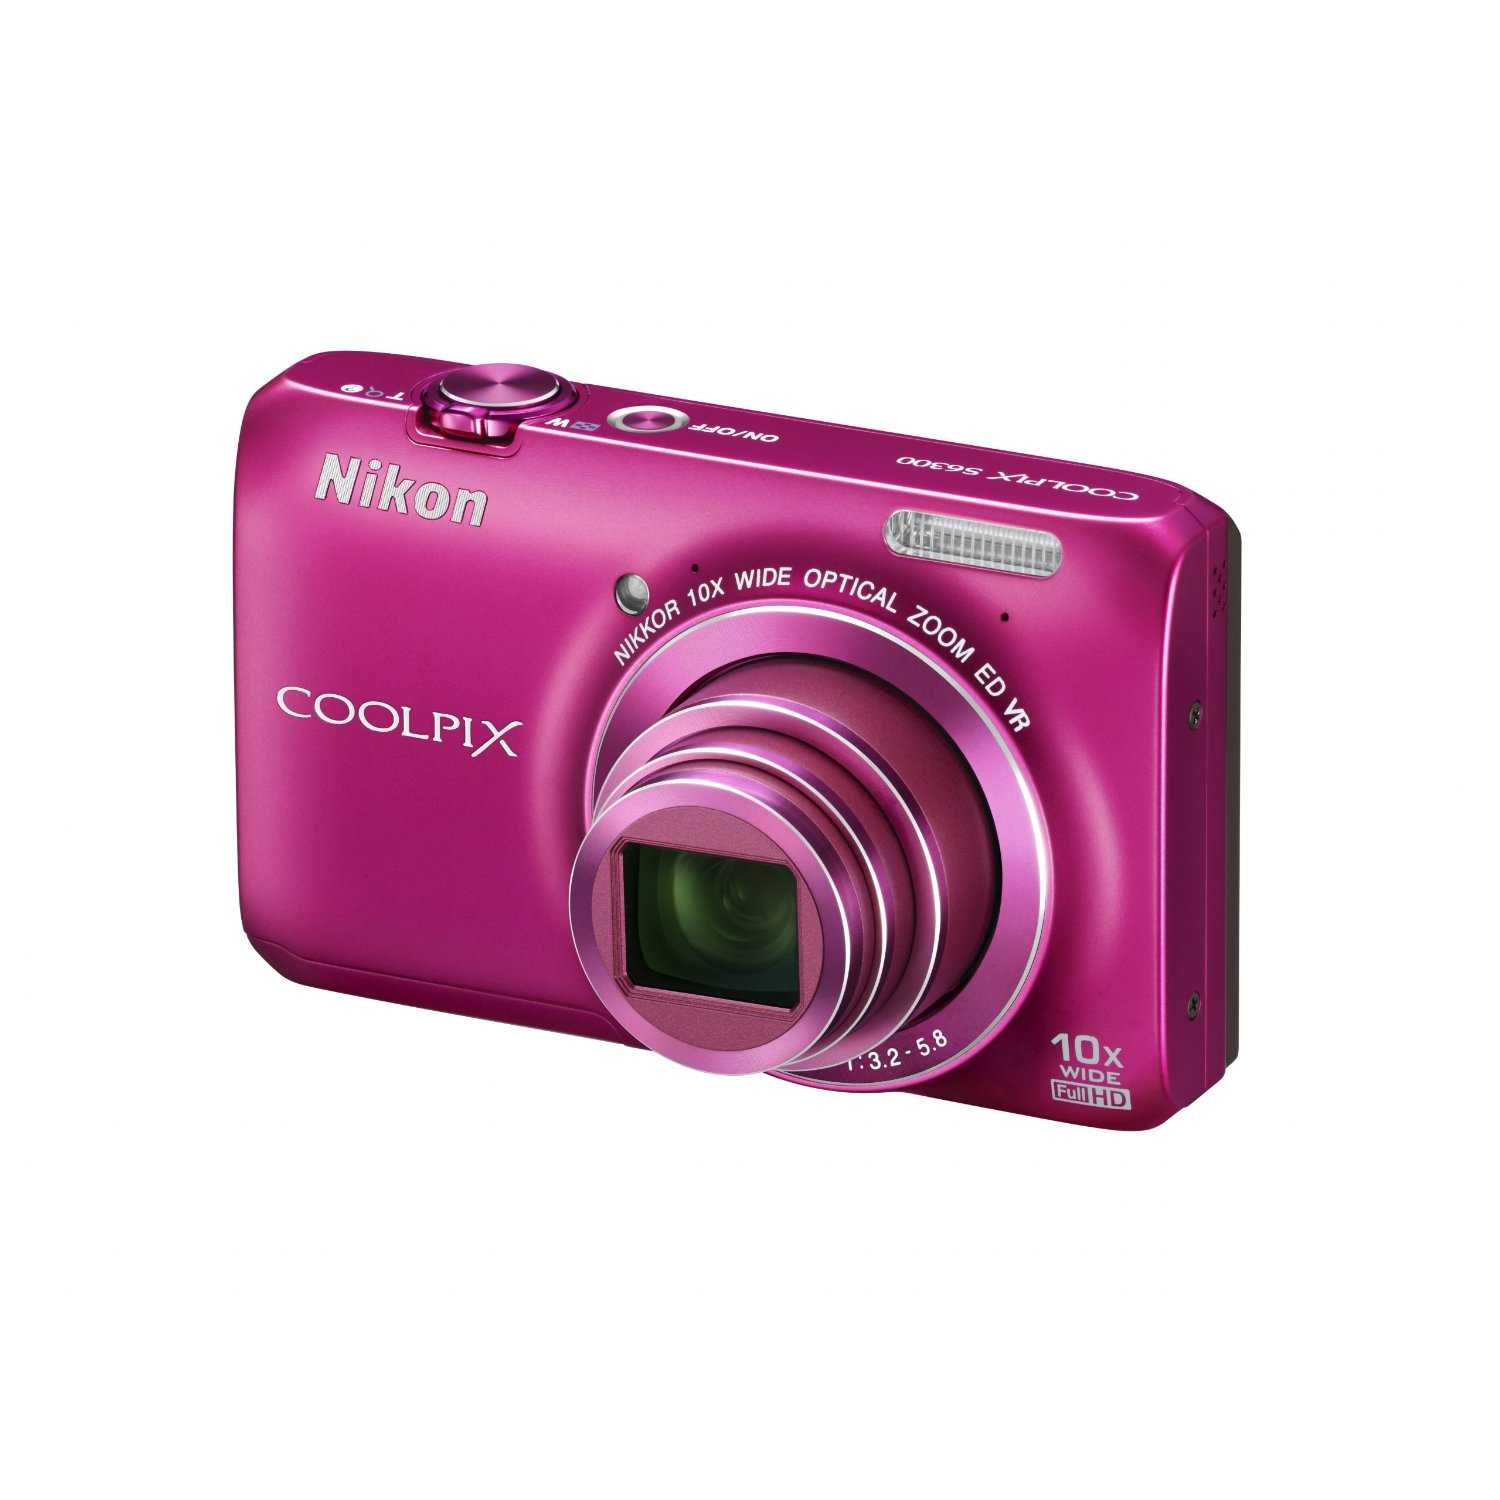 Фотоаппарат nikon coolpix 3200 — купить, цена и характеристики, отзывы